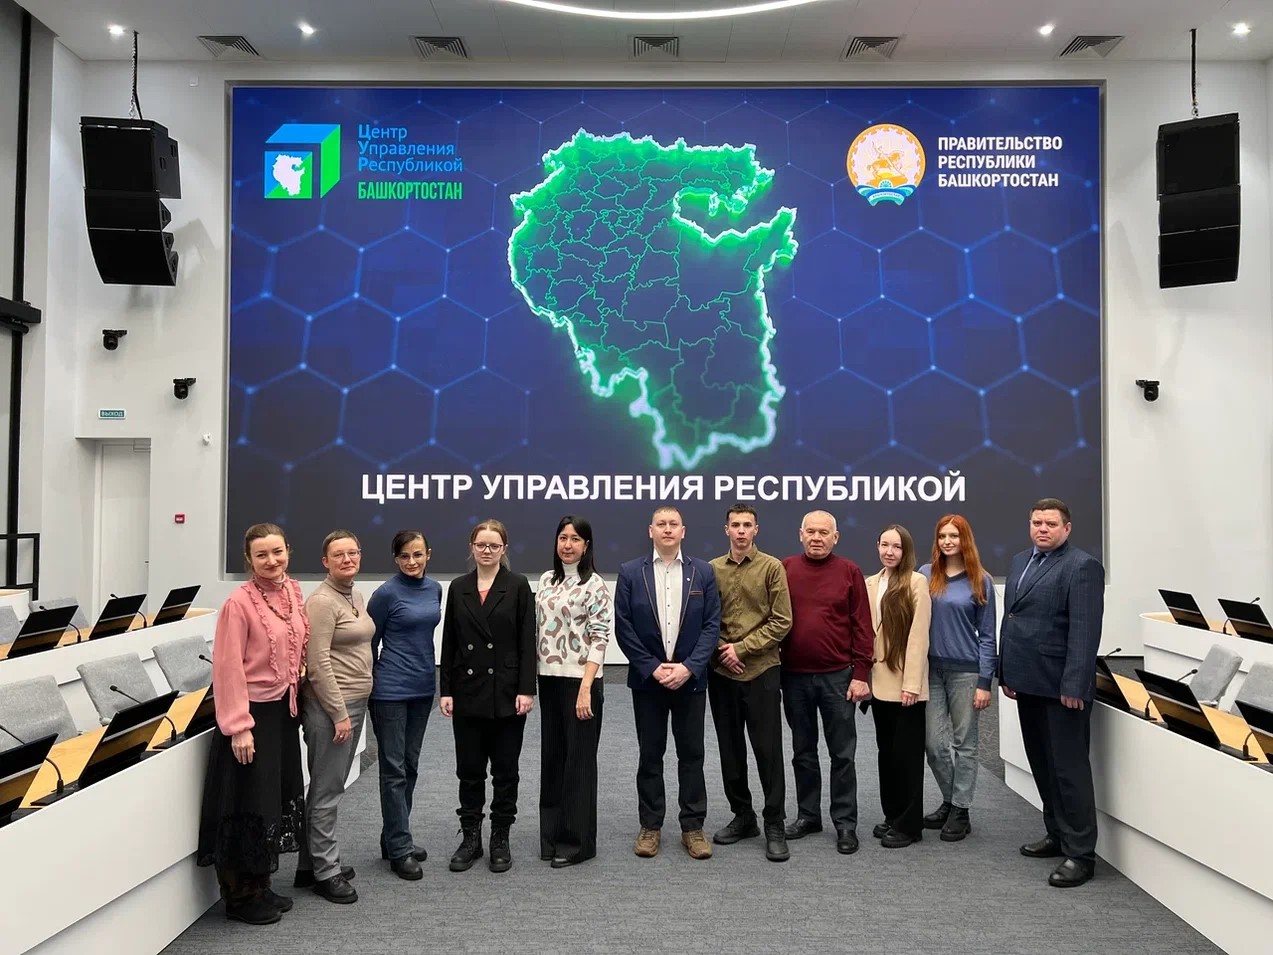 Сотрудники Уфимского филиала Финуниверситета посетили Центр управления Республикой Башкортостан в рамках первой встречи-обучения